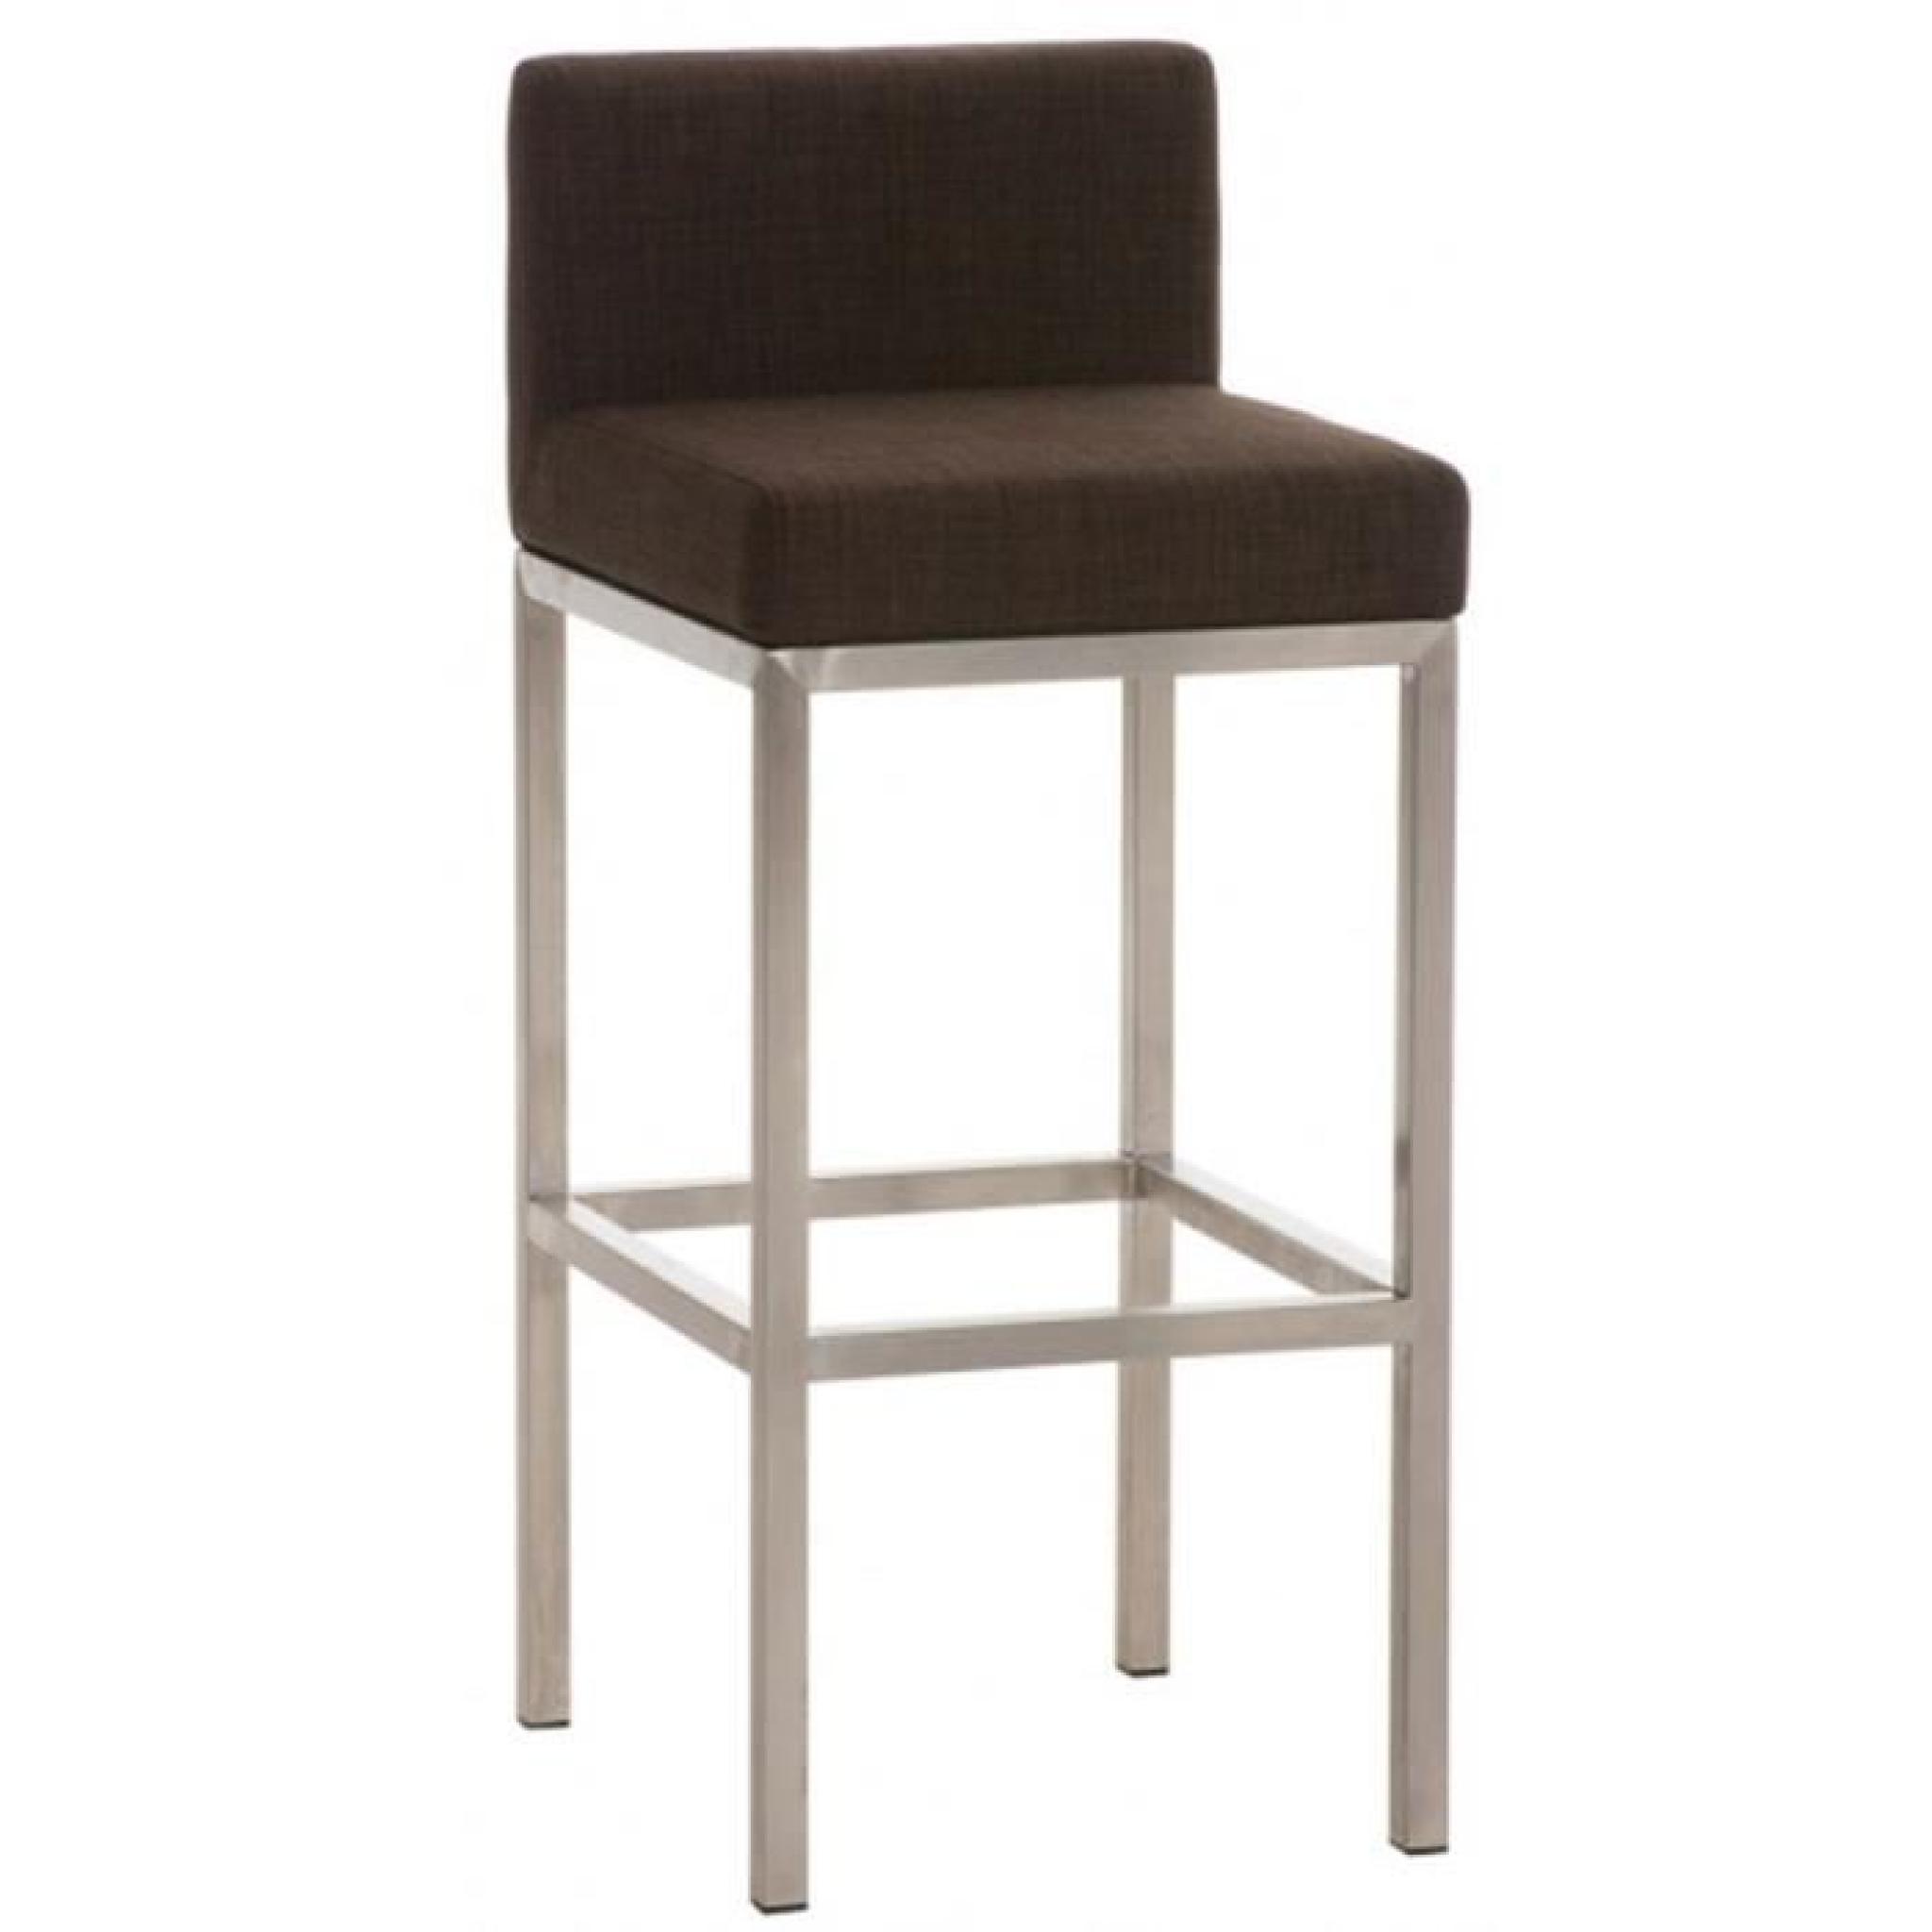 Chaise de bar en acier inoxydable et tissu coloris brun, H 96,5 x L 40 x P 44,5 cm